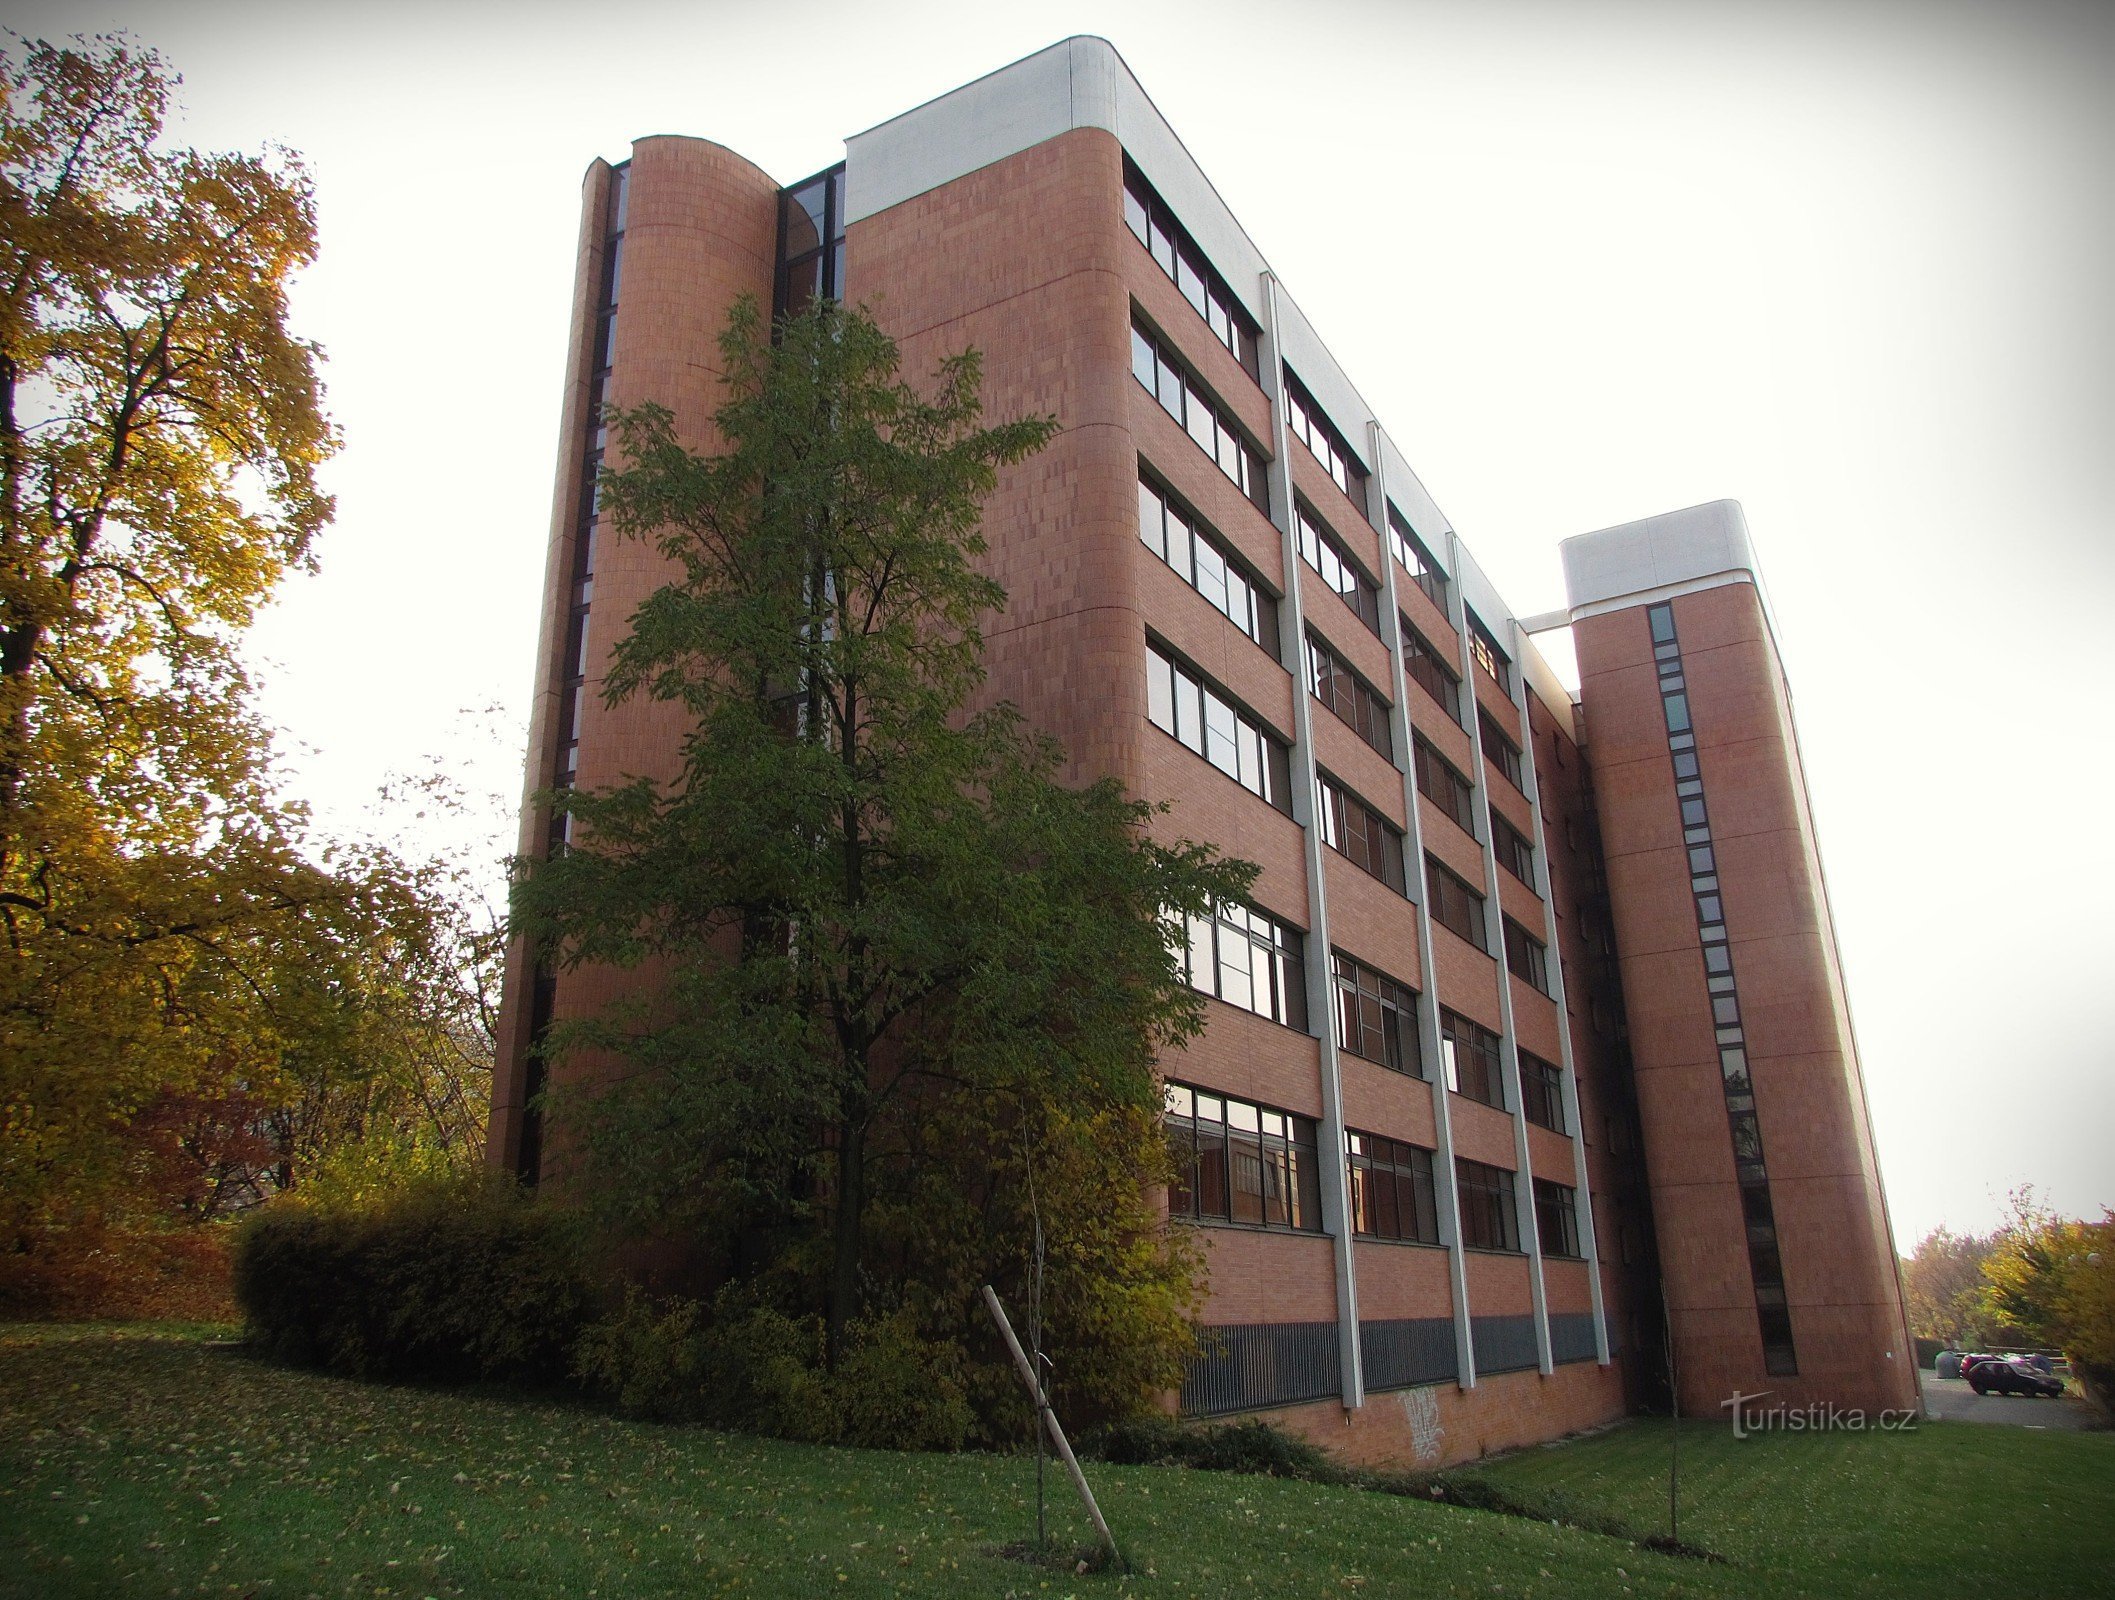 Zlín - bâtiment de la Faculté de gestion et d'économie